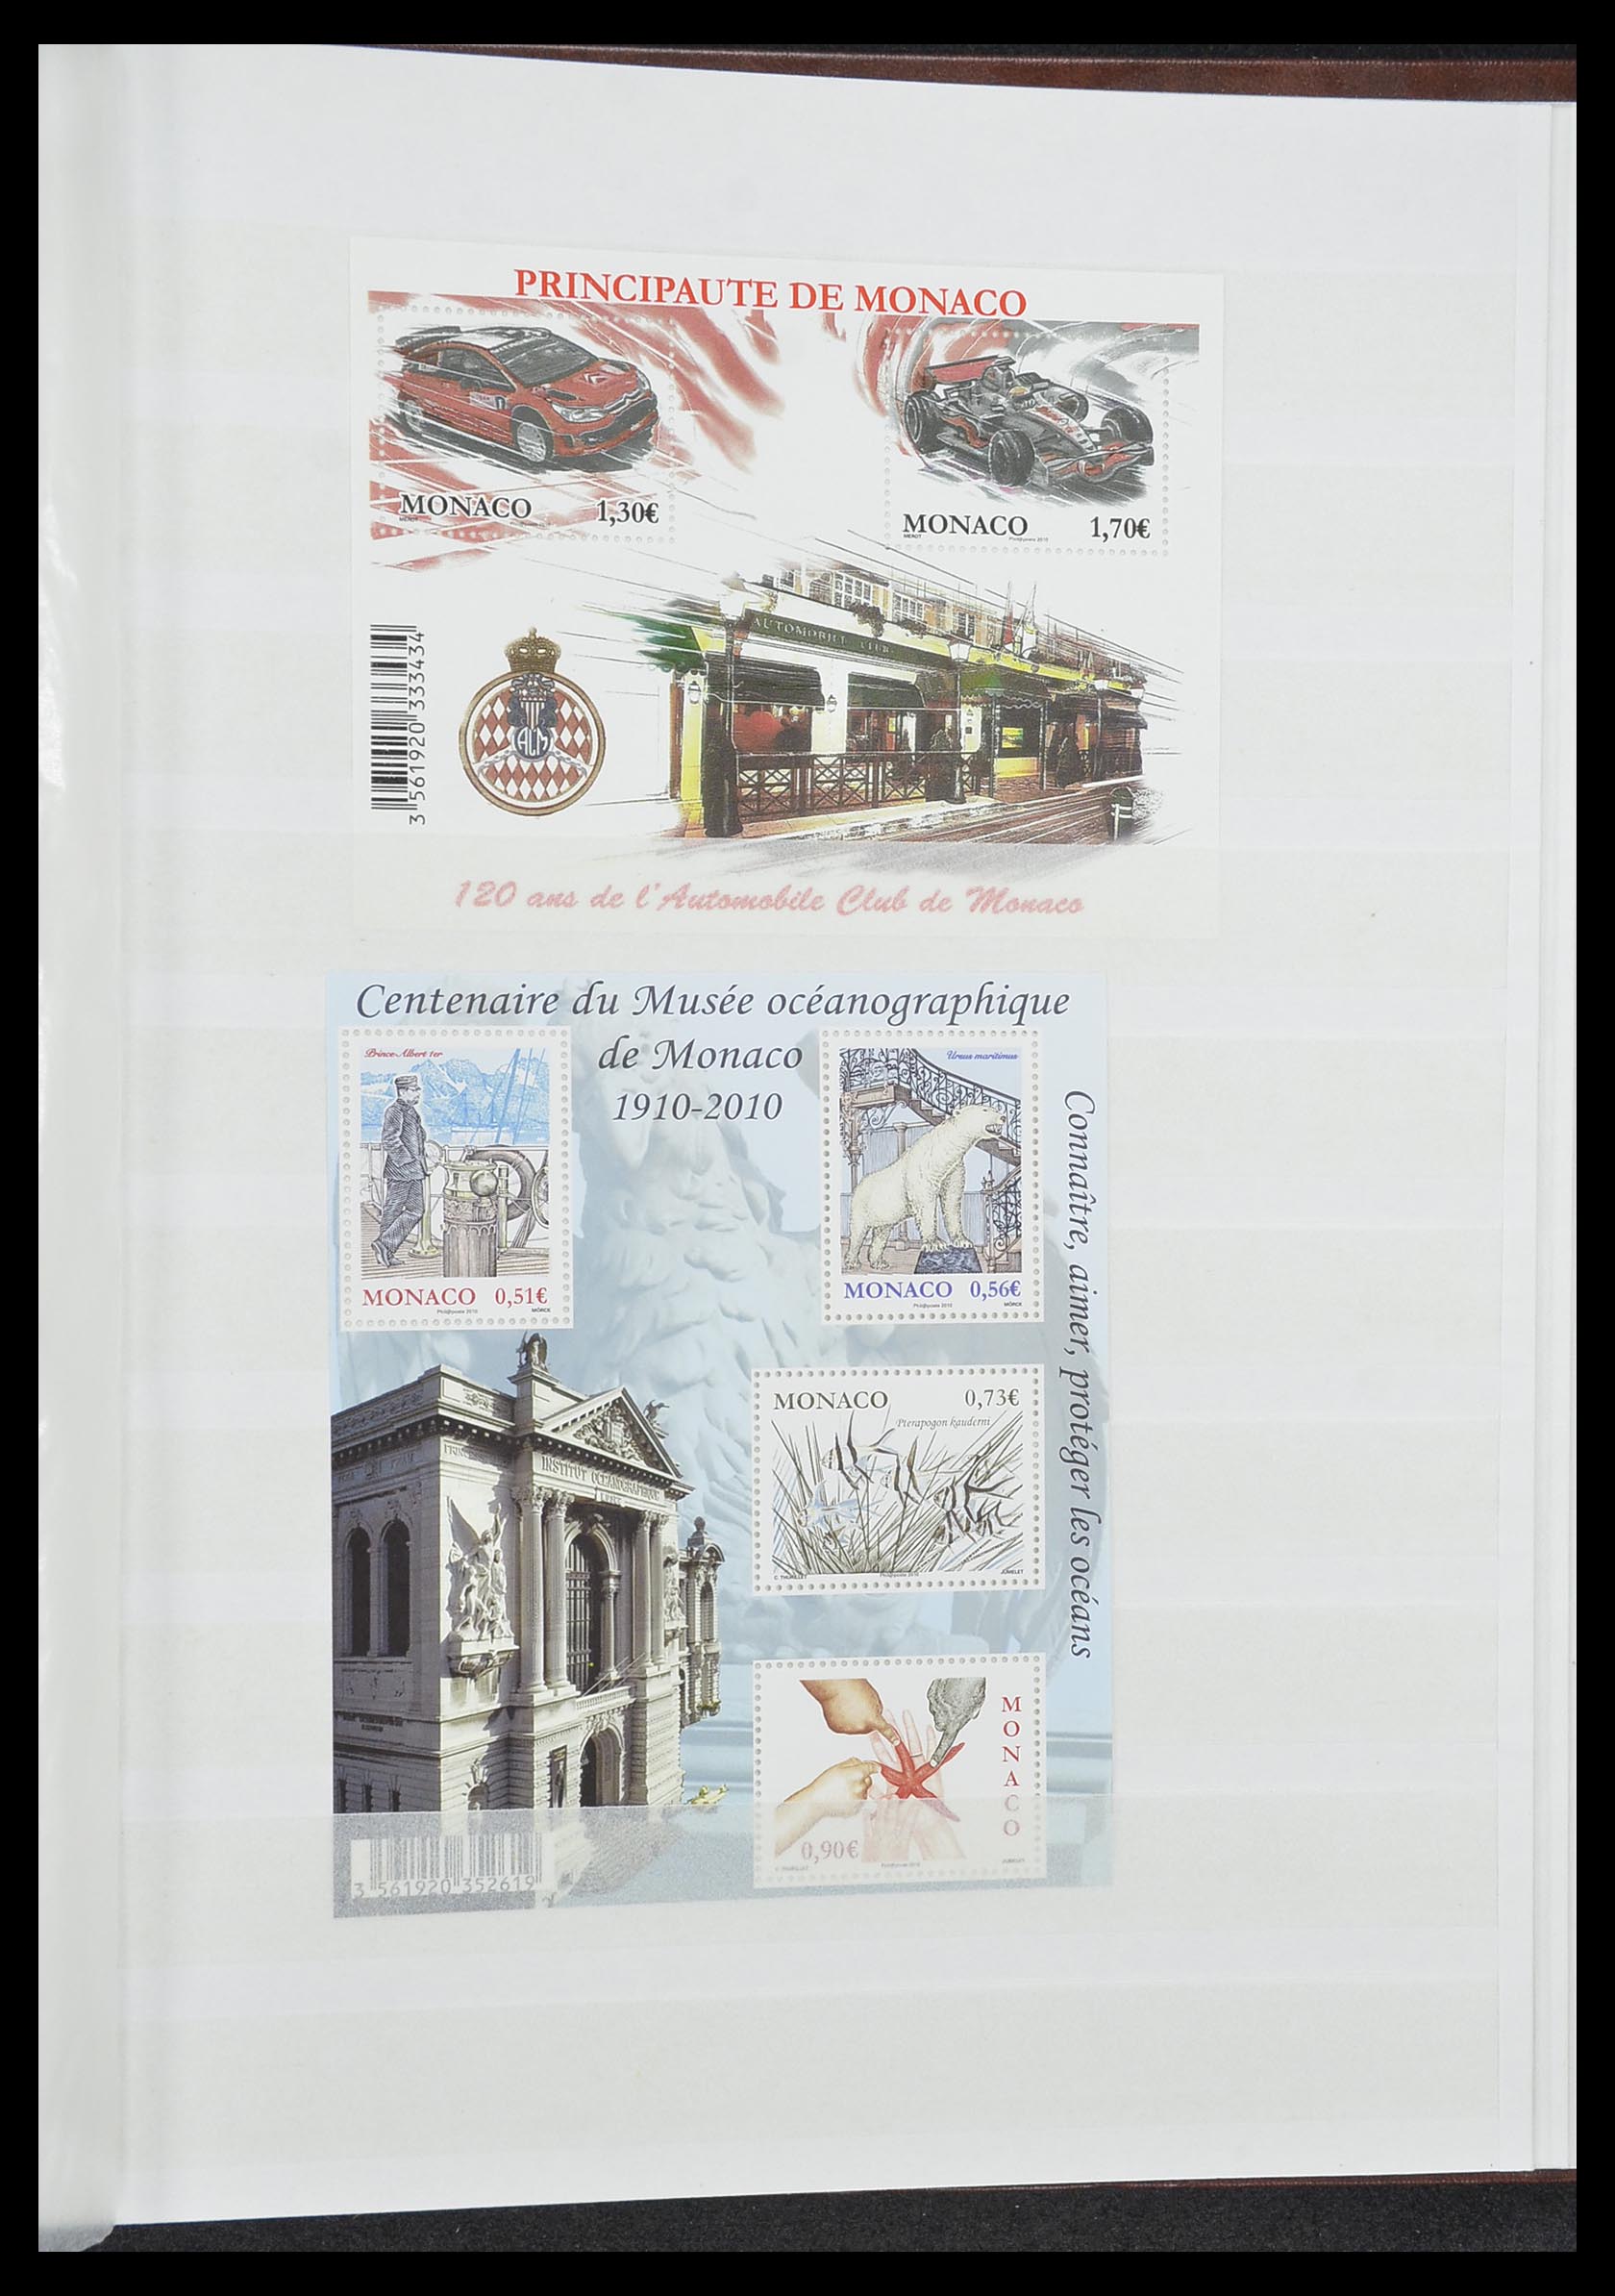 33833 053 - Stamp collection 33833 Monaco souvenir sheets 1979-2015.